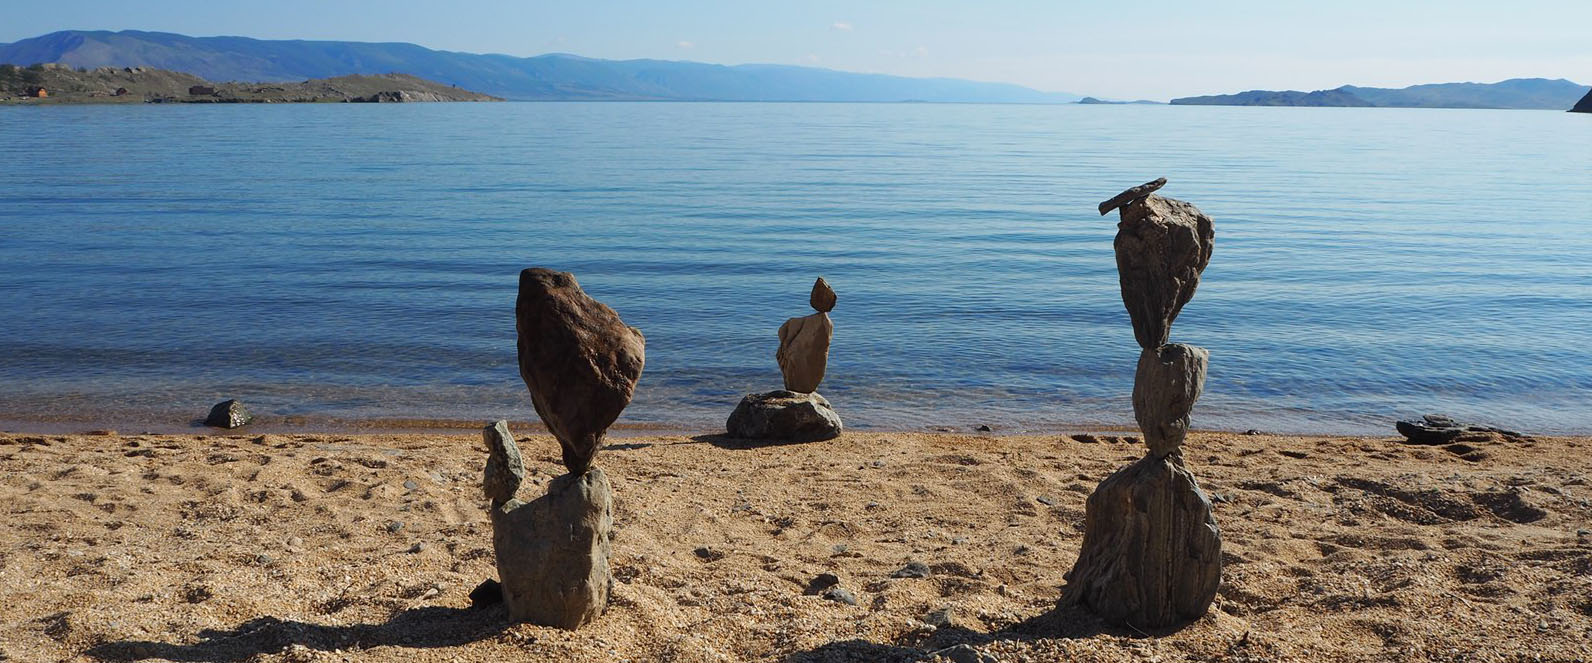 Stonebalancing Lac Baikal